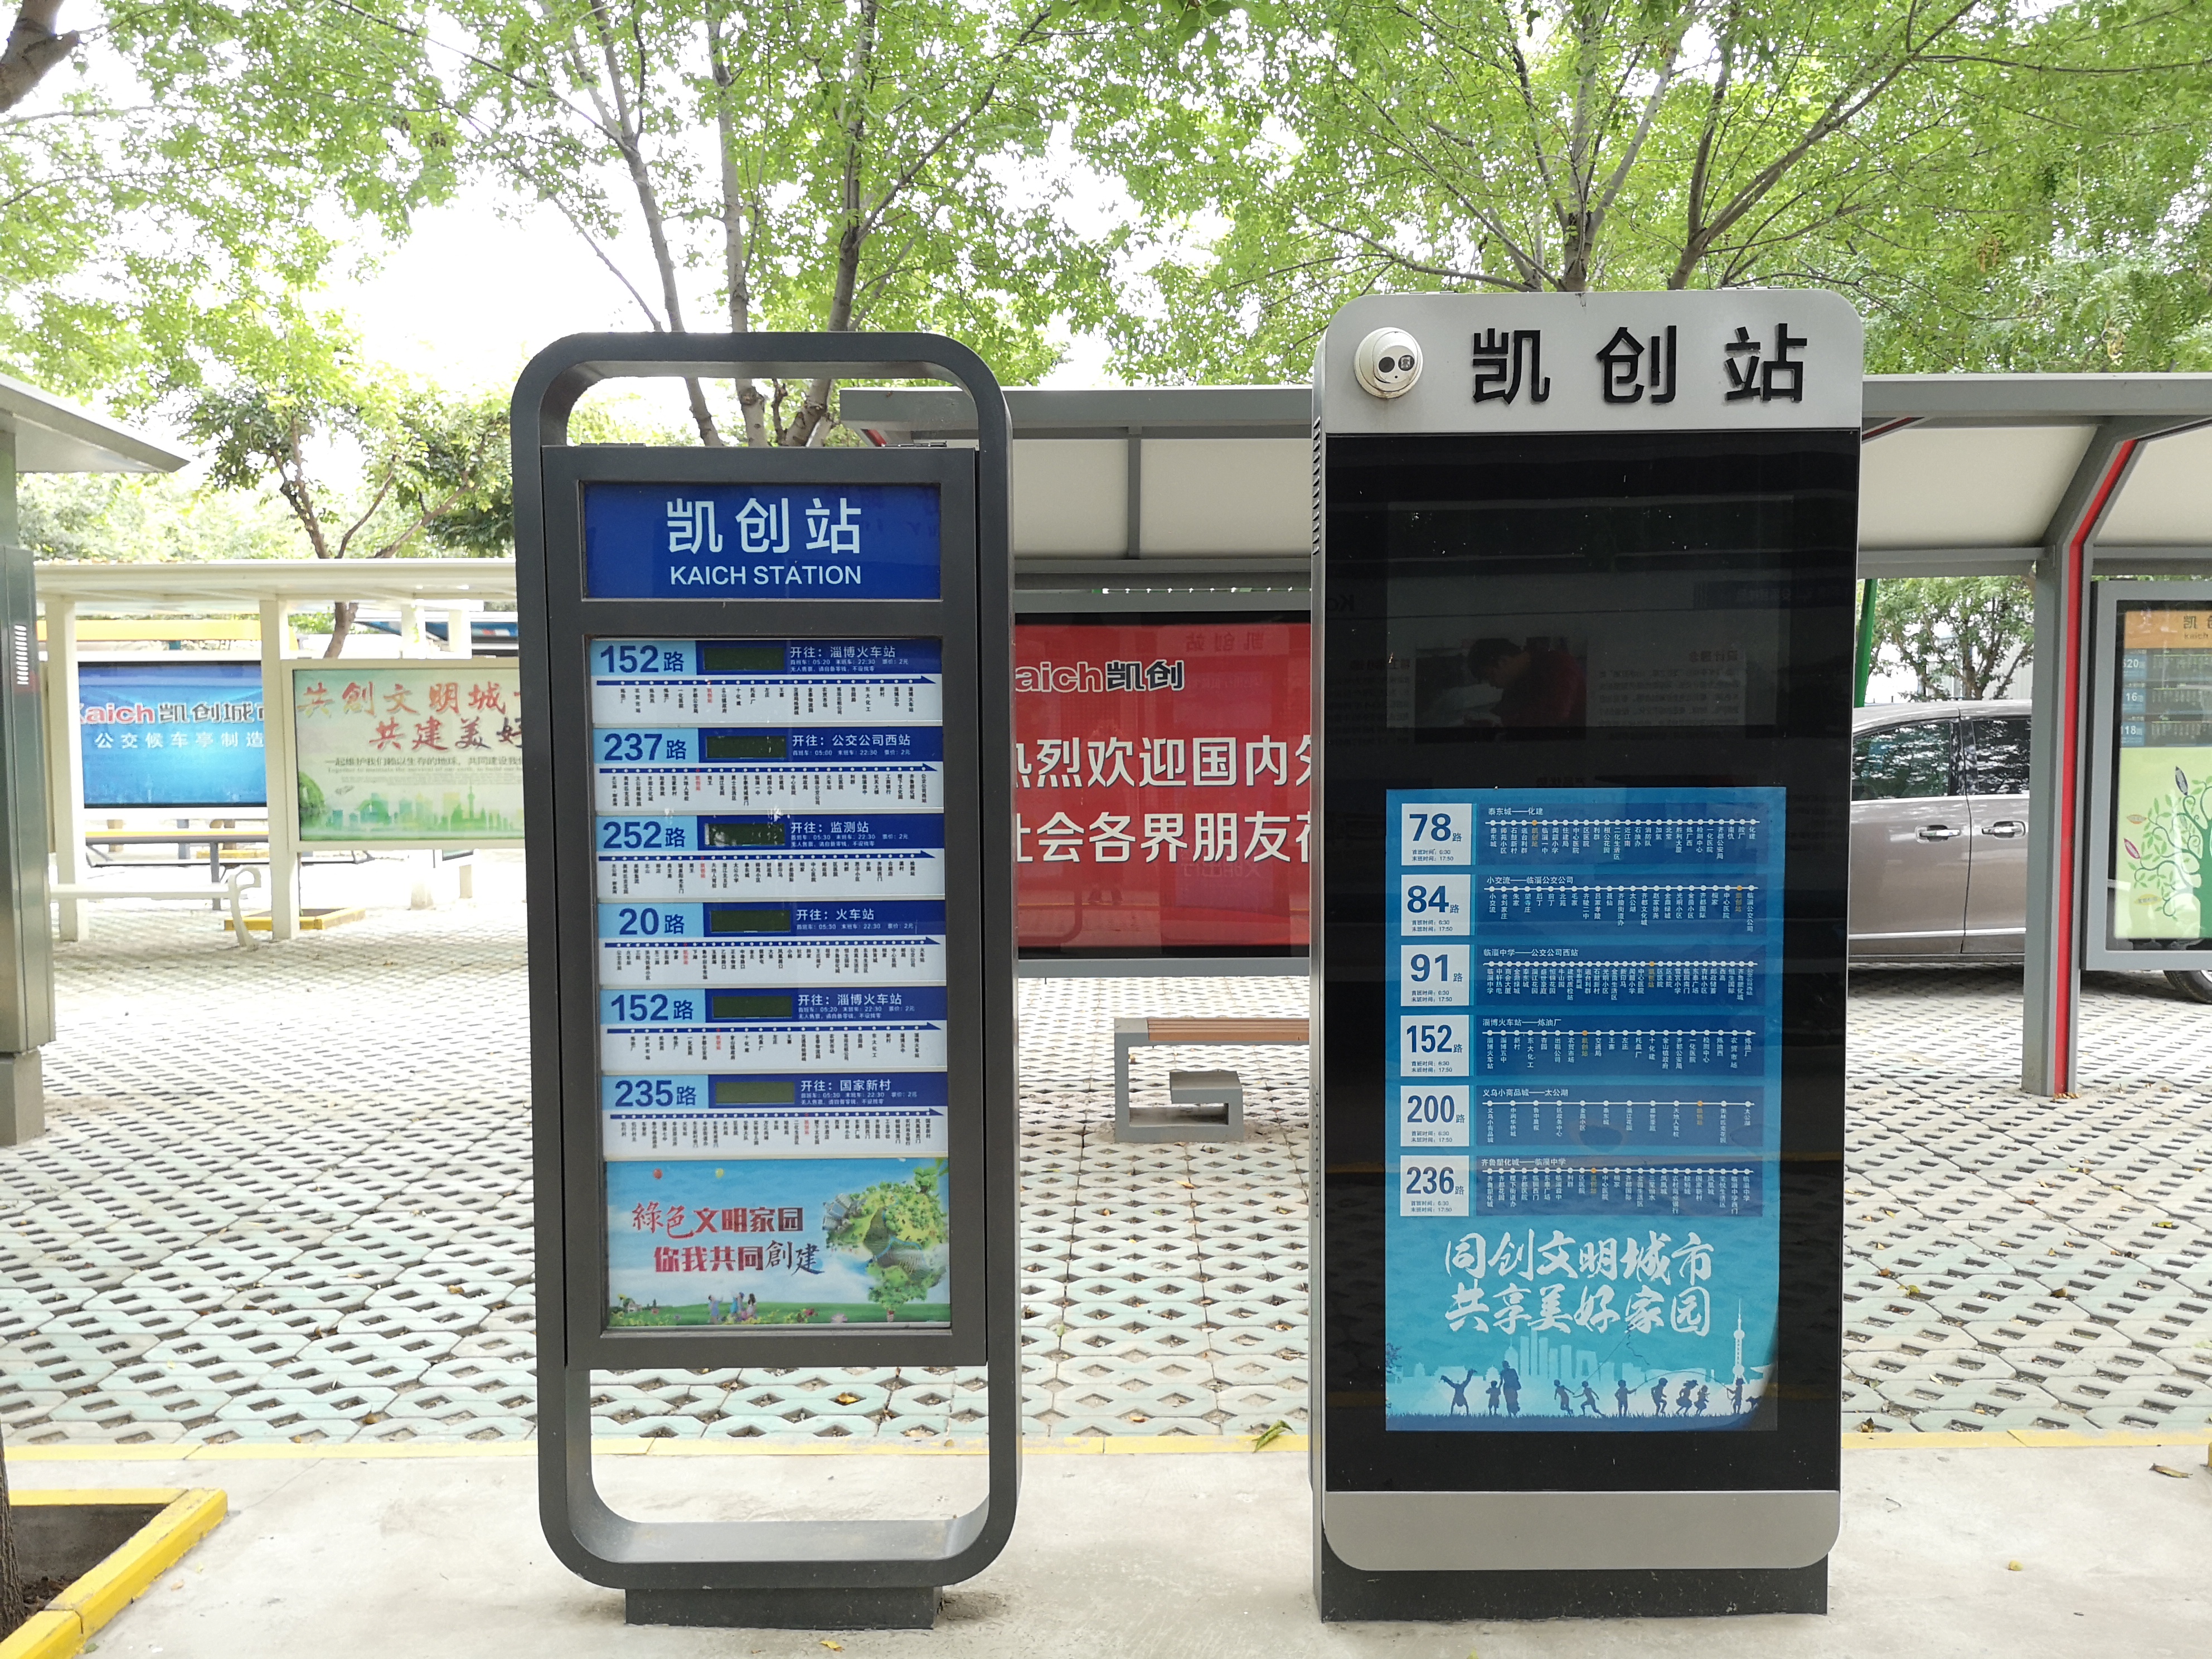 5g网络的普及也将促进智能公交站牌的发展